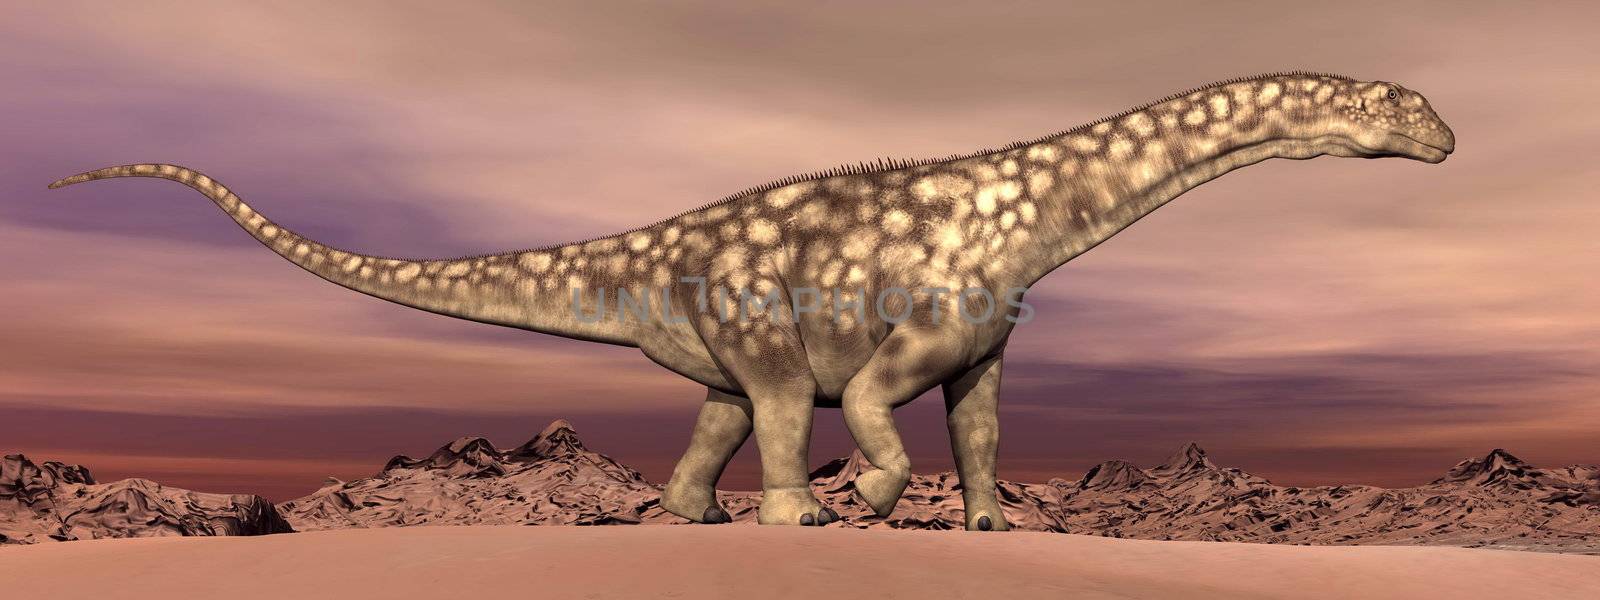 Argentinosaurus dinosaur walking - 3D render by Elenaphotos21